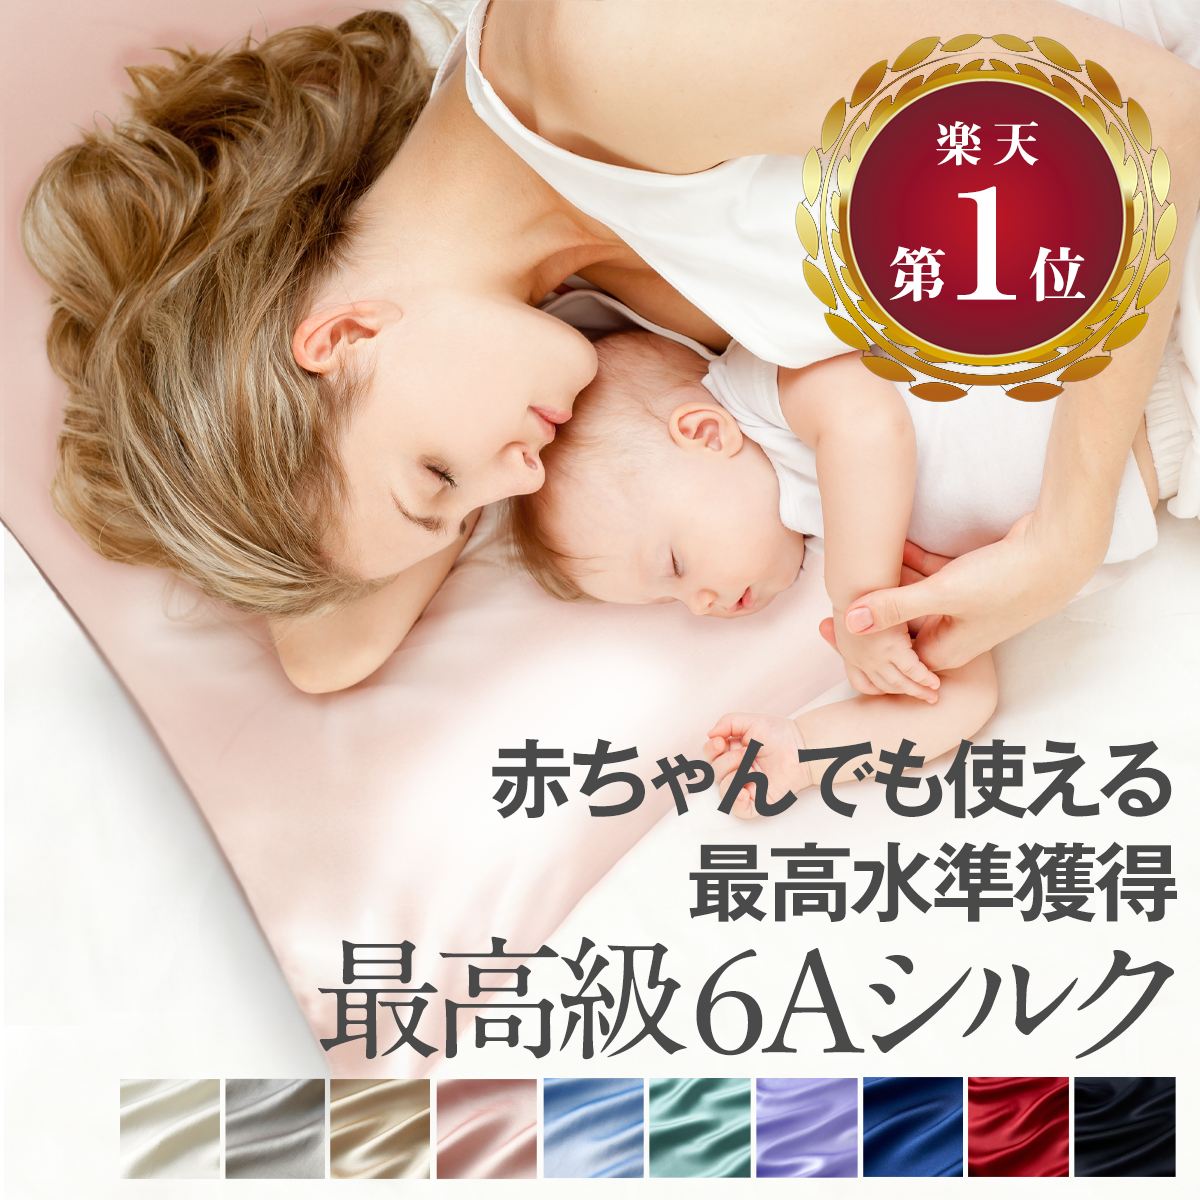 coconemシルク枕カバー｜最高級6Aランクの両面天然シルクを100%使用した贅沢な枕カバー